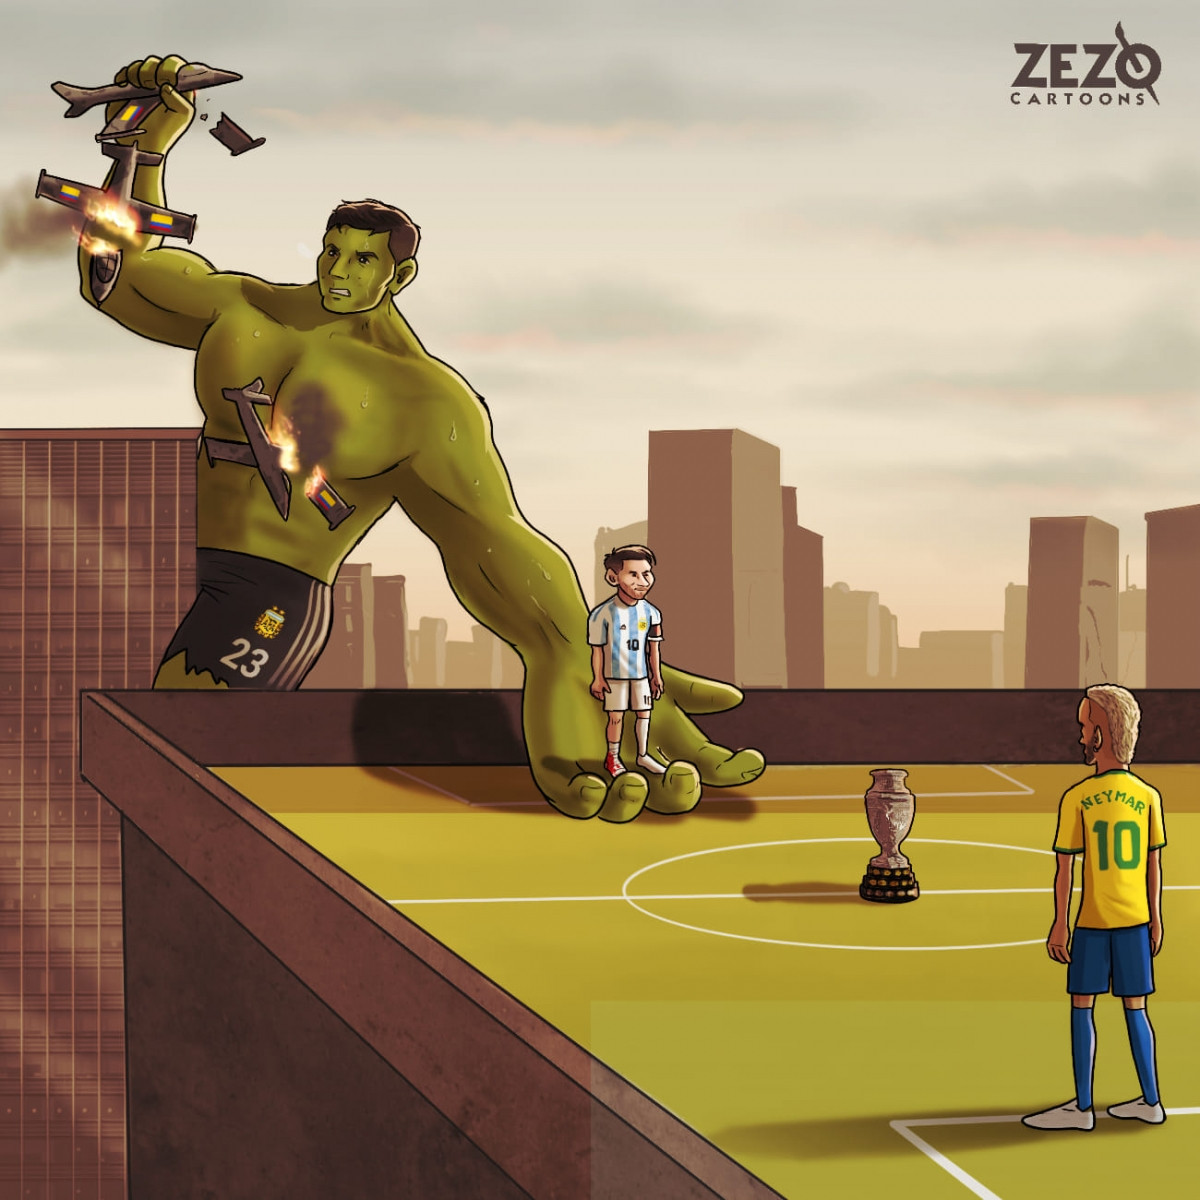 Thủ môn Emiliano Martínez đưa ĐT Argentina vào chung kết Copa America 2021. (Ảnh: ZEZO Cartoons)